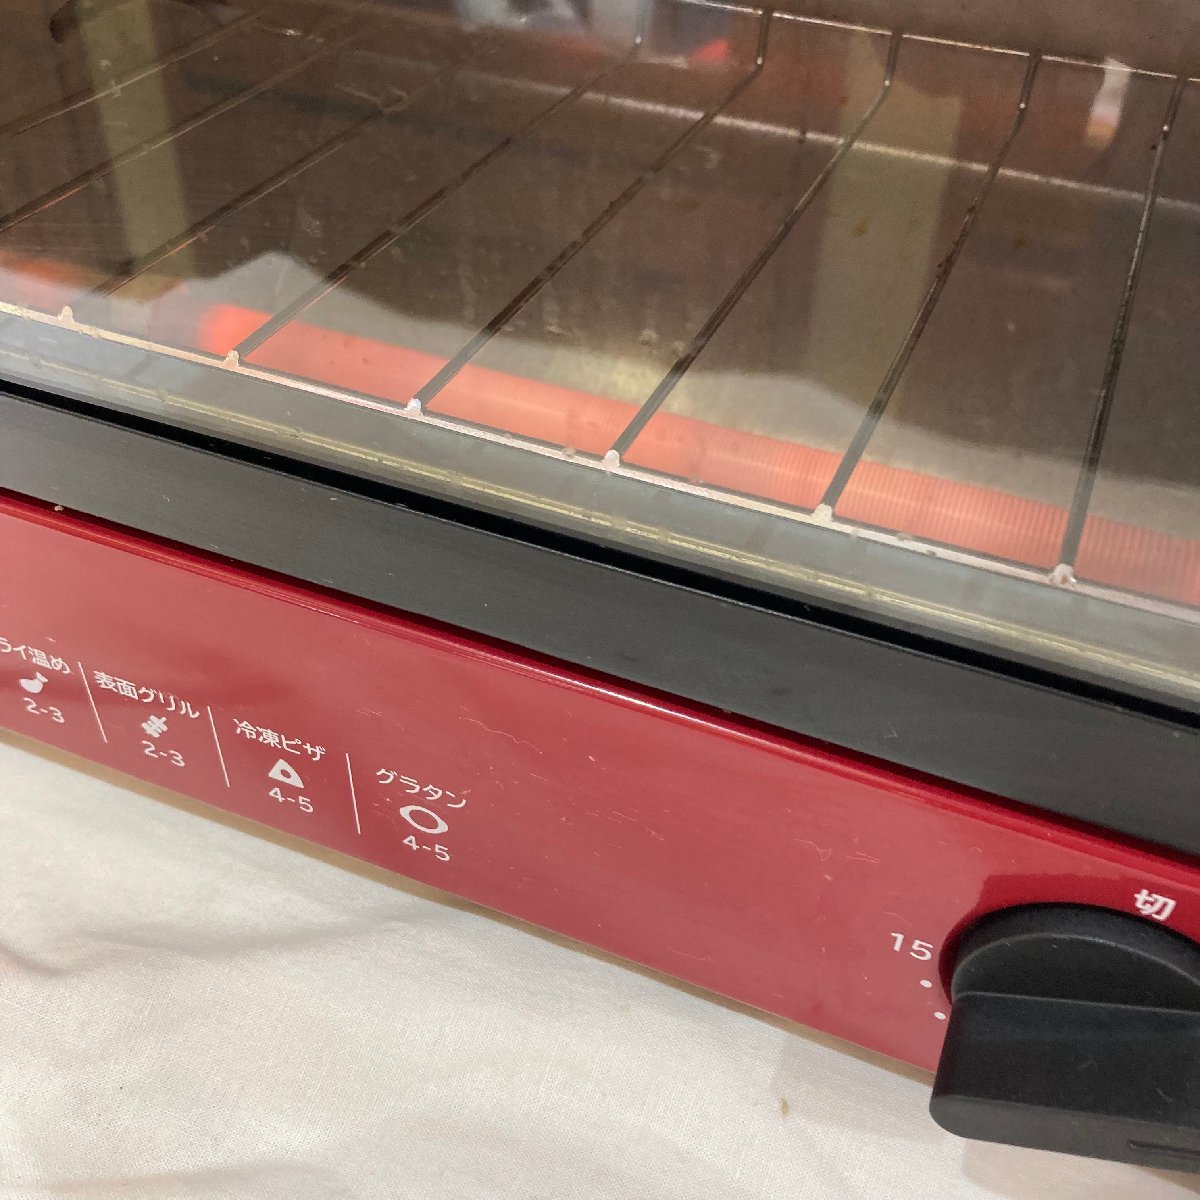  б/у * Hitachi * печь тостер HTO-C1A 2022 год производства красный 1000W